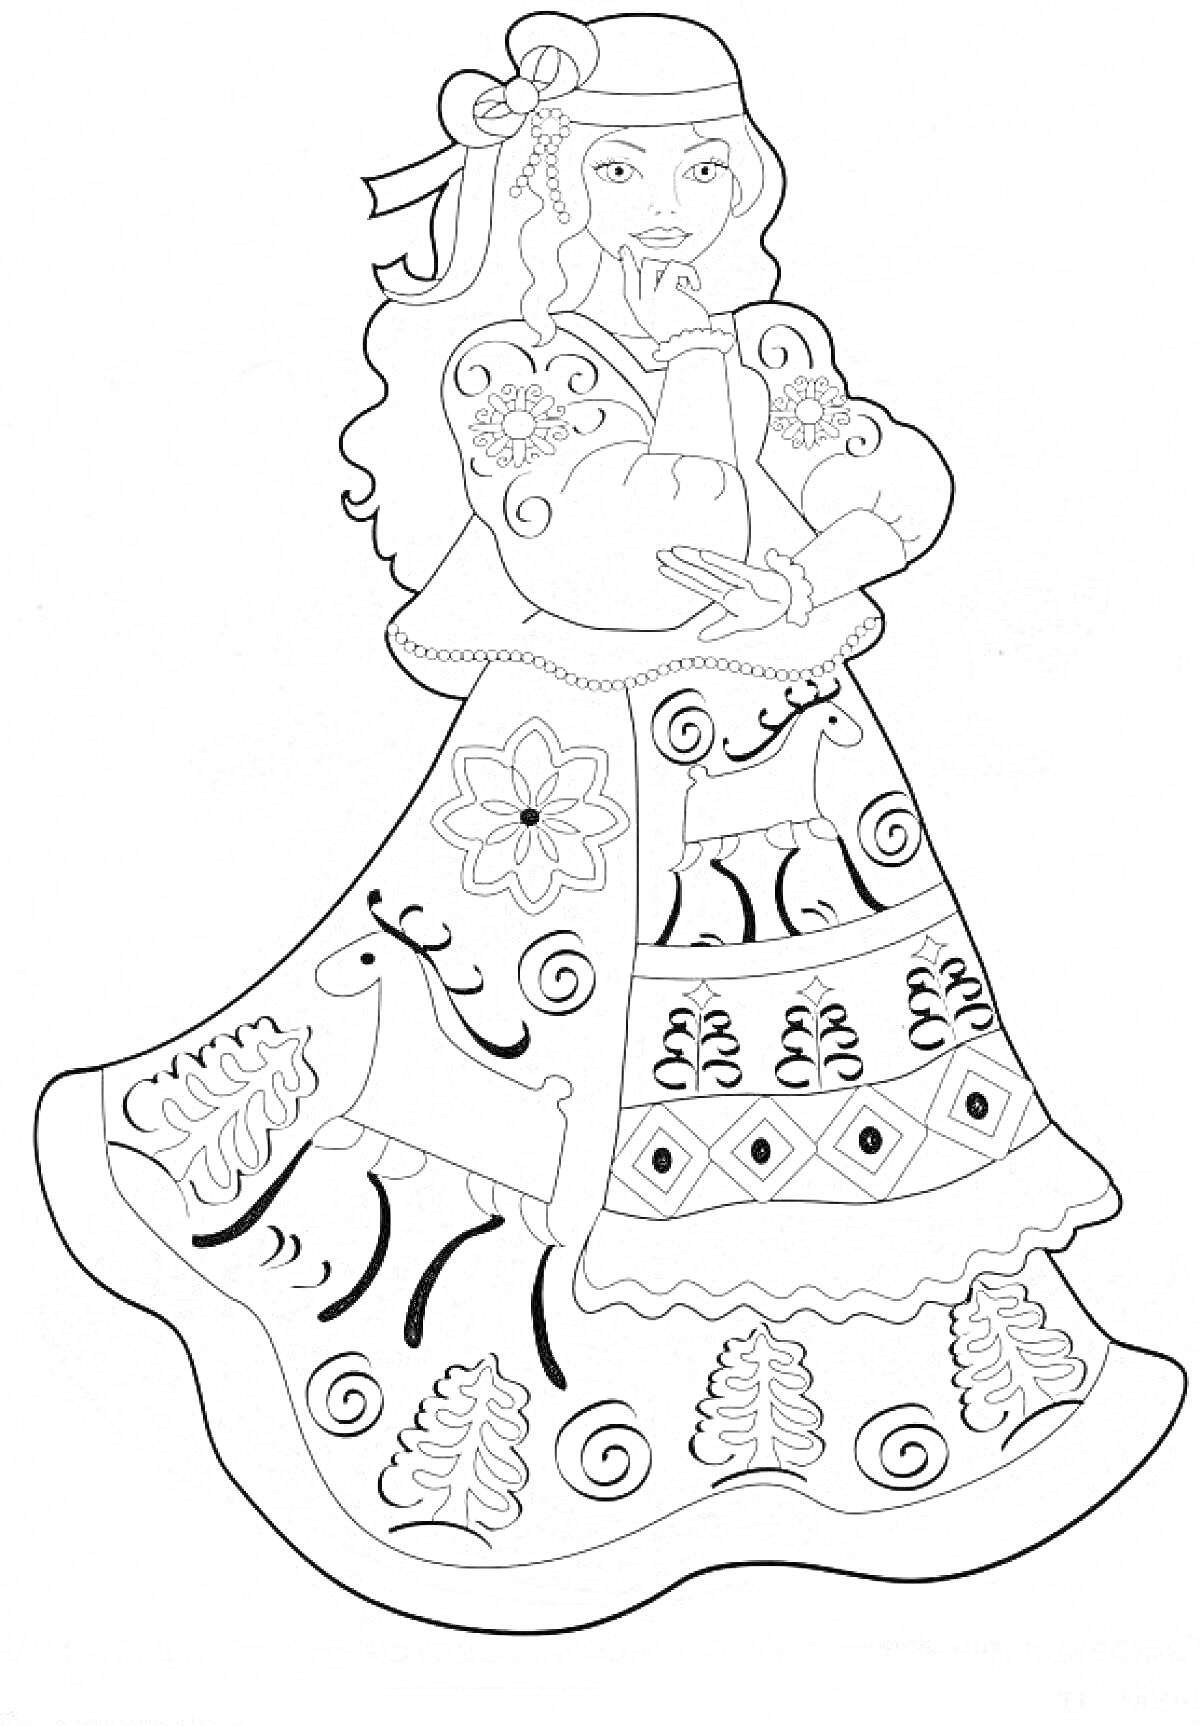 Барышня в национальном костюме с вышивкой, оленем и цветами на платье